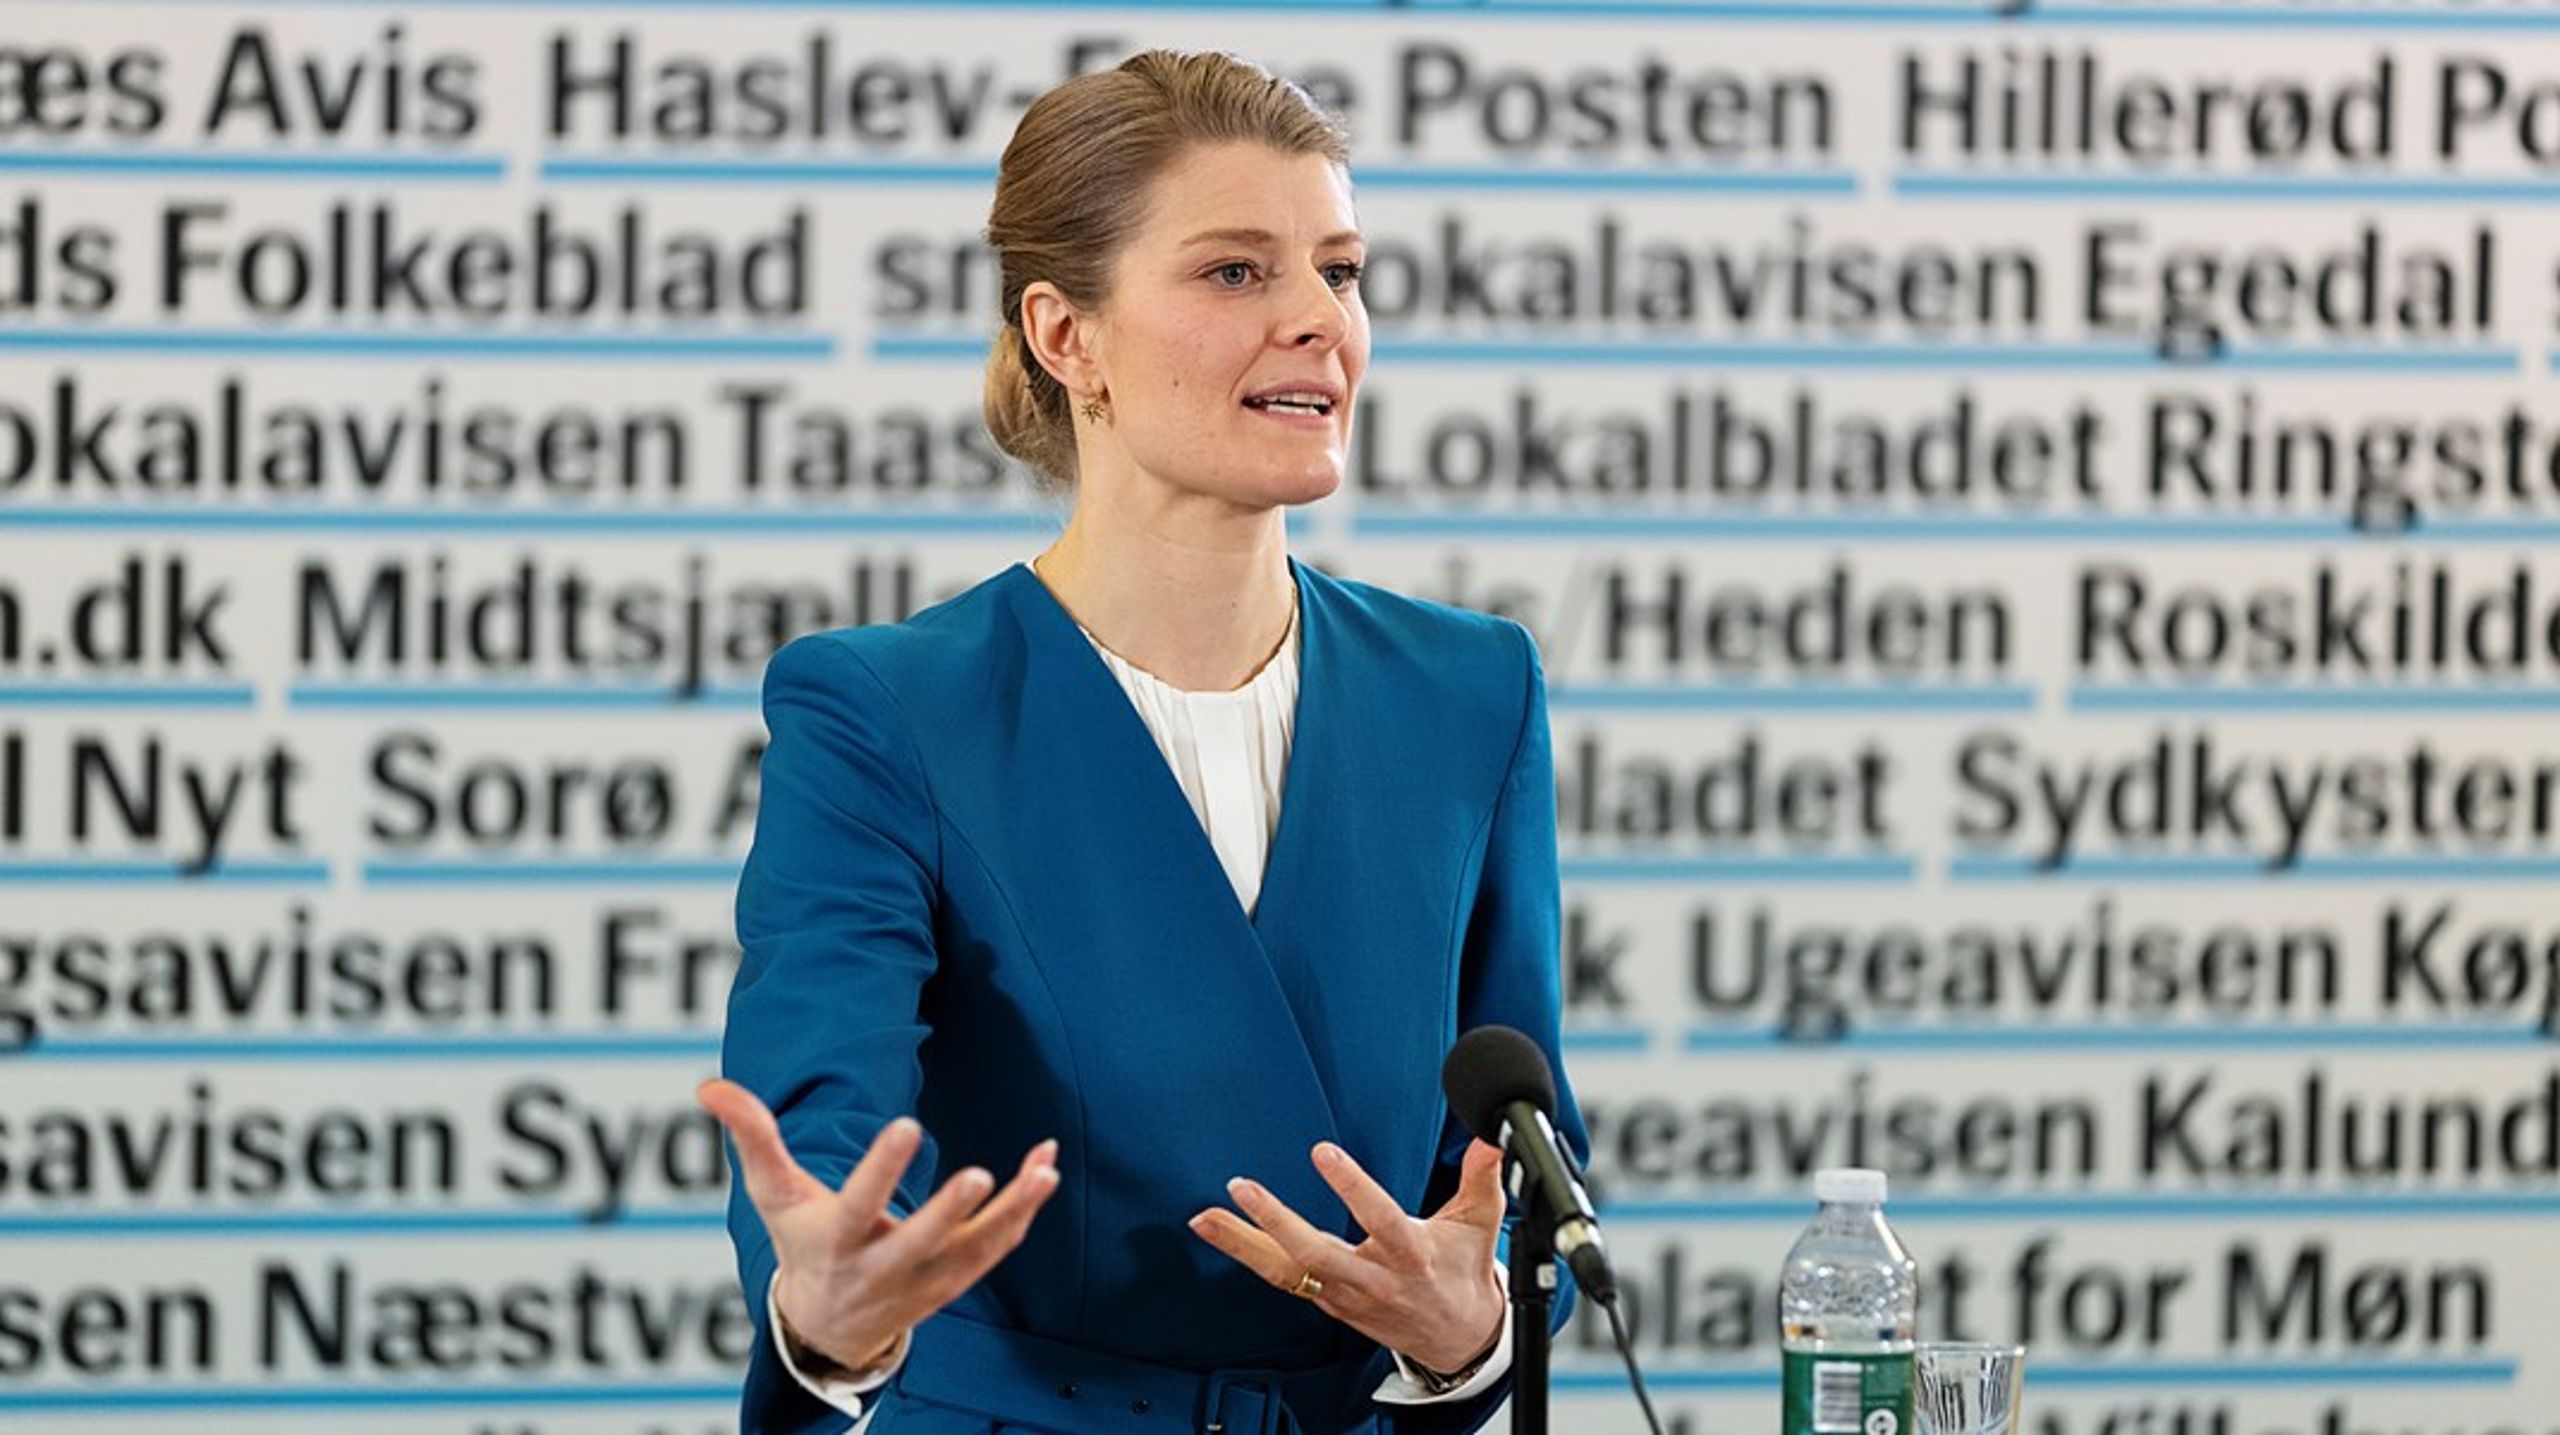 Ane Halsboe-Jørgensen ved præsentationen af&nbsp;regeringens medieudspil hos Sjællandske Medier.